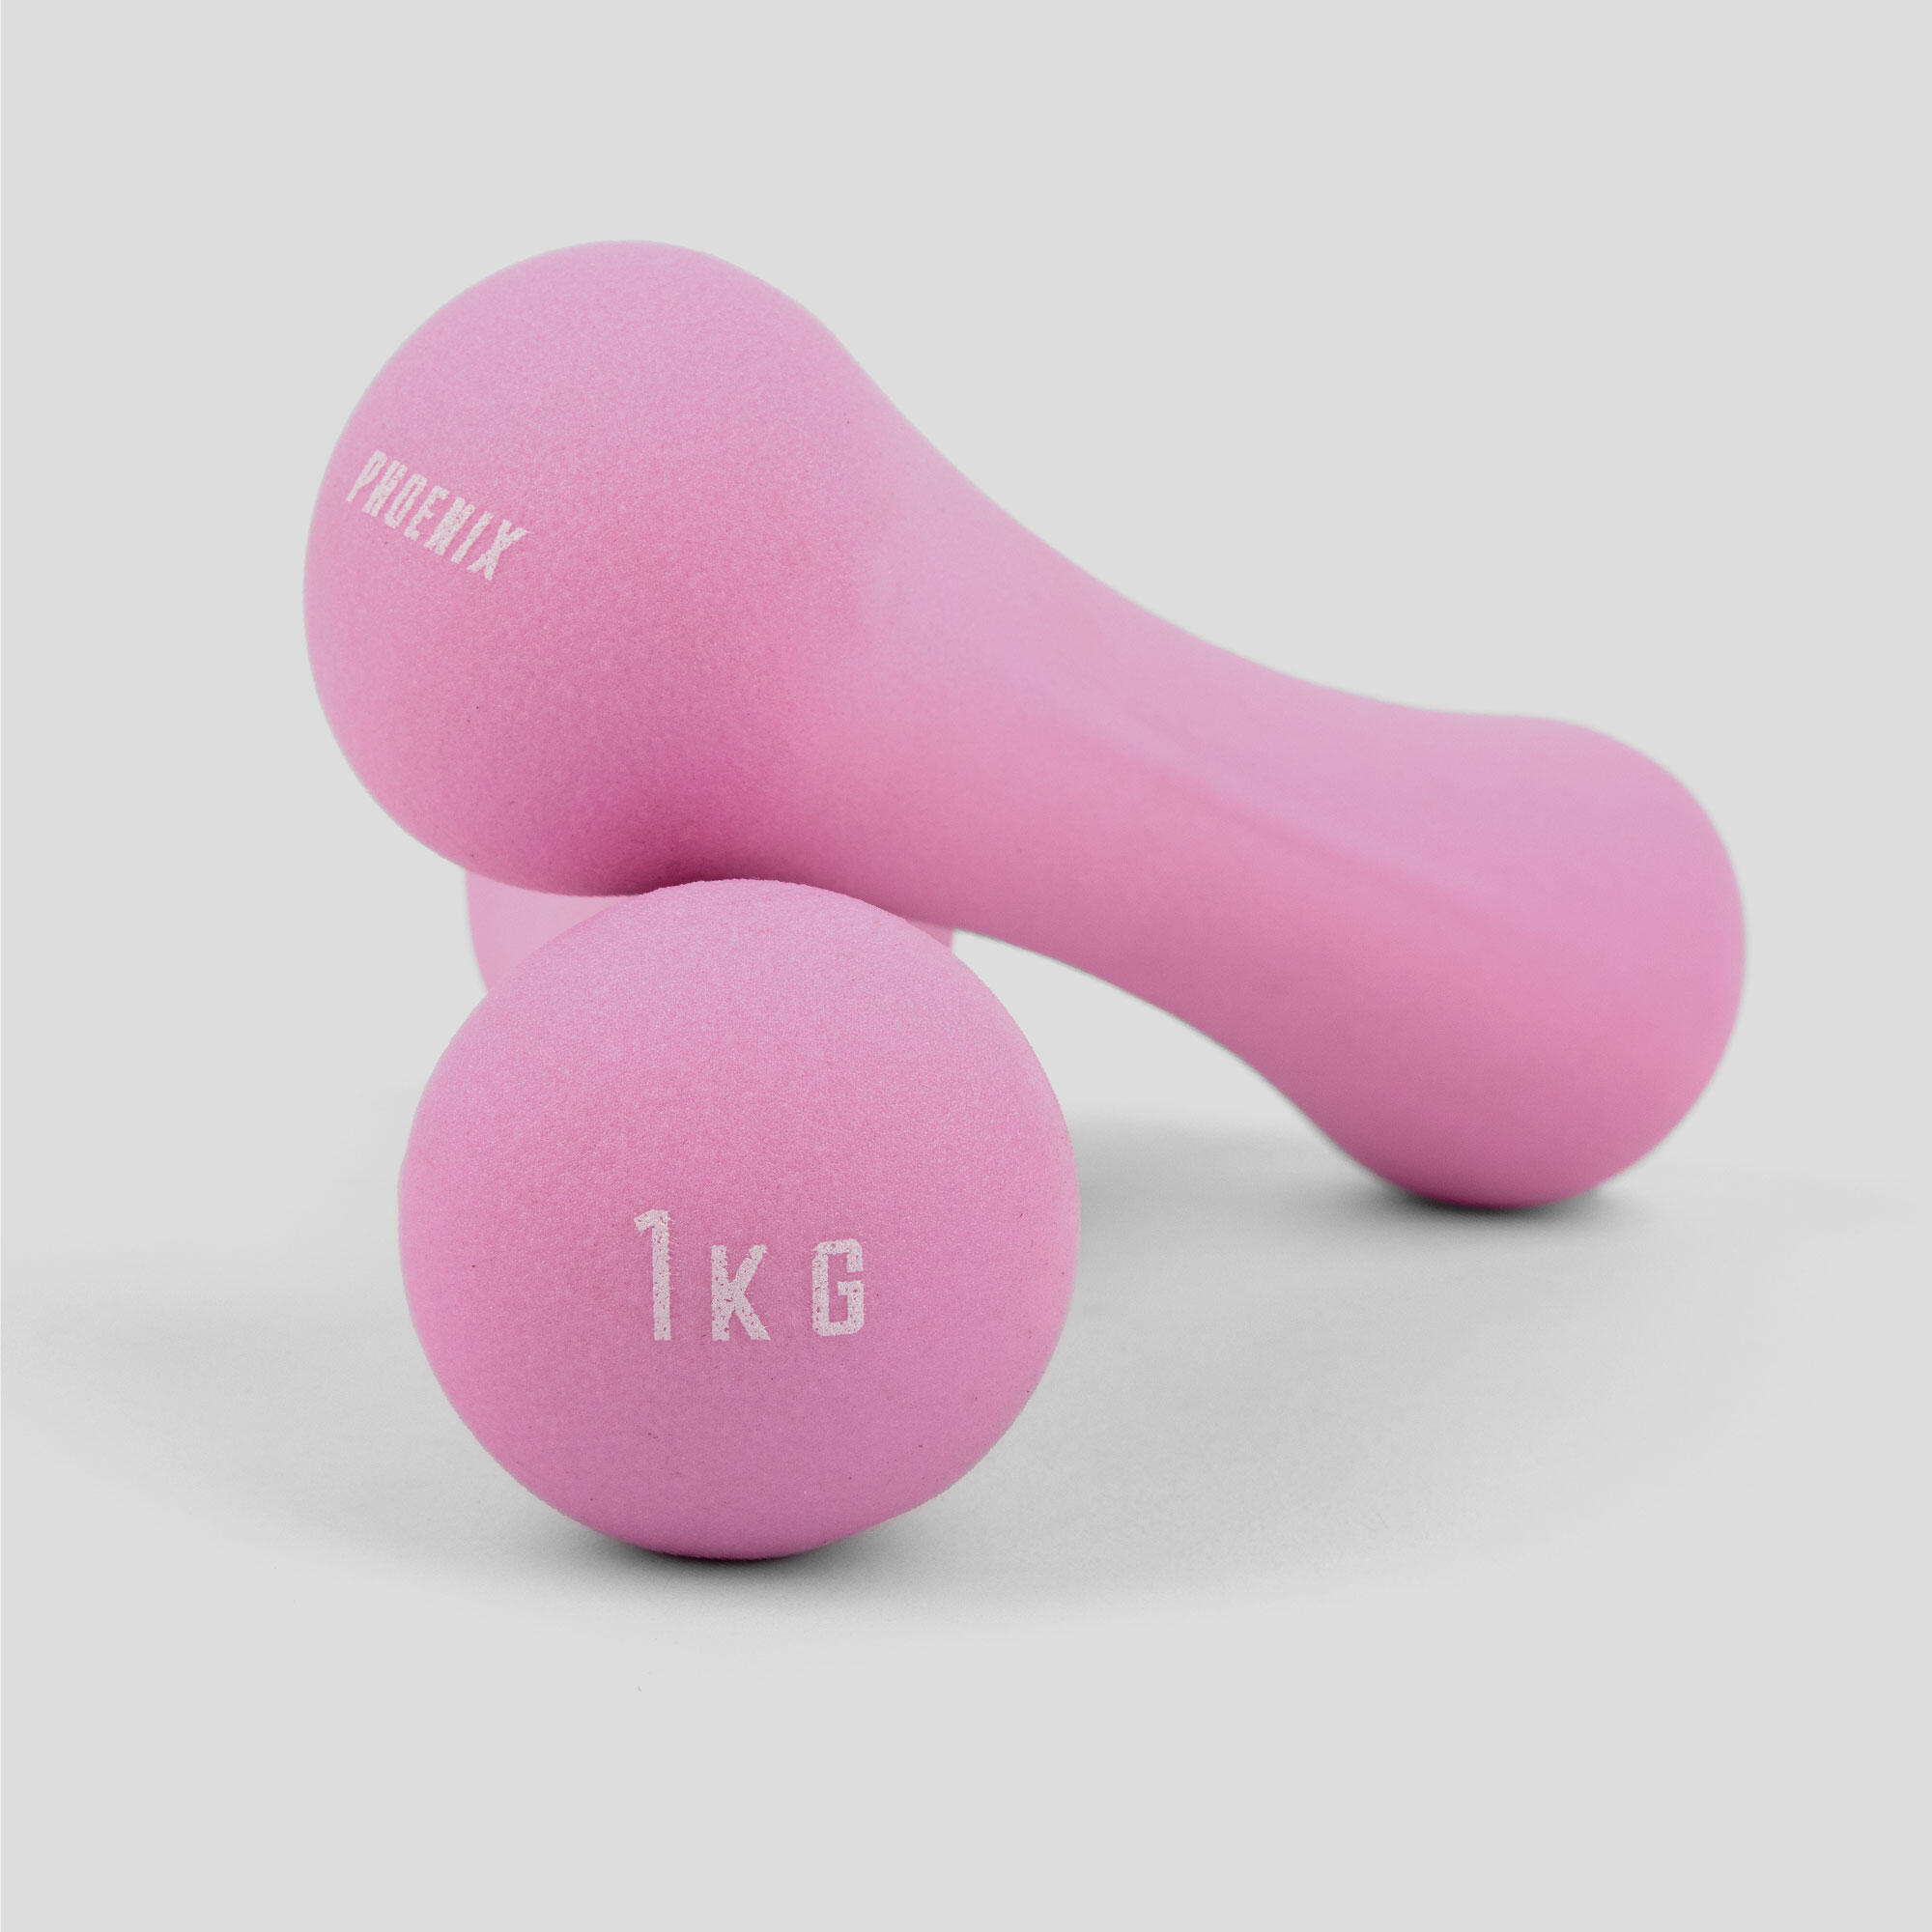 Neoprene Dumbbell Weight - 1KG PAIR - Pink 4/7